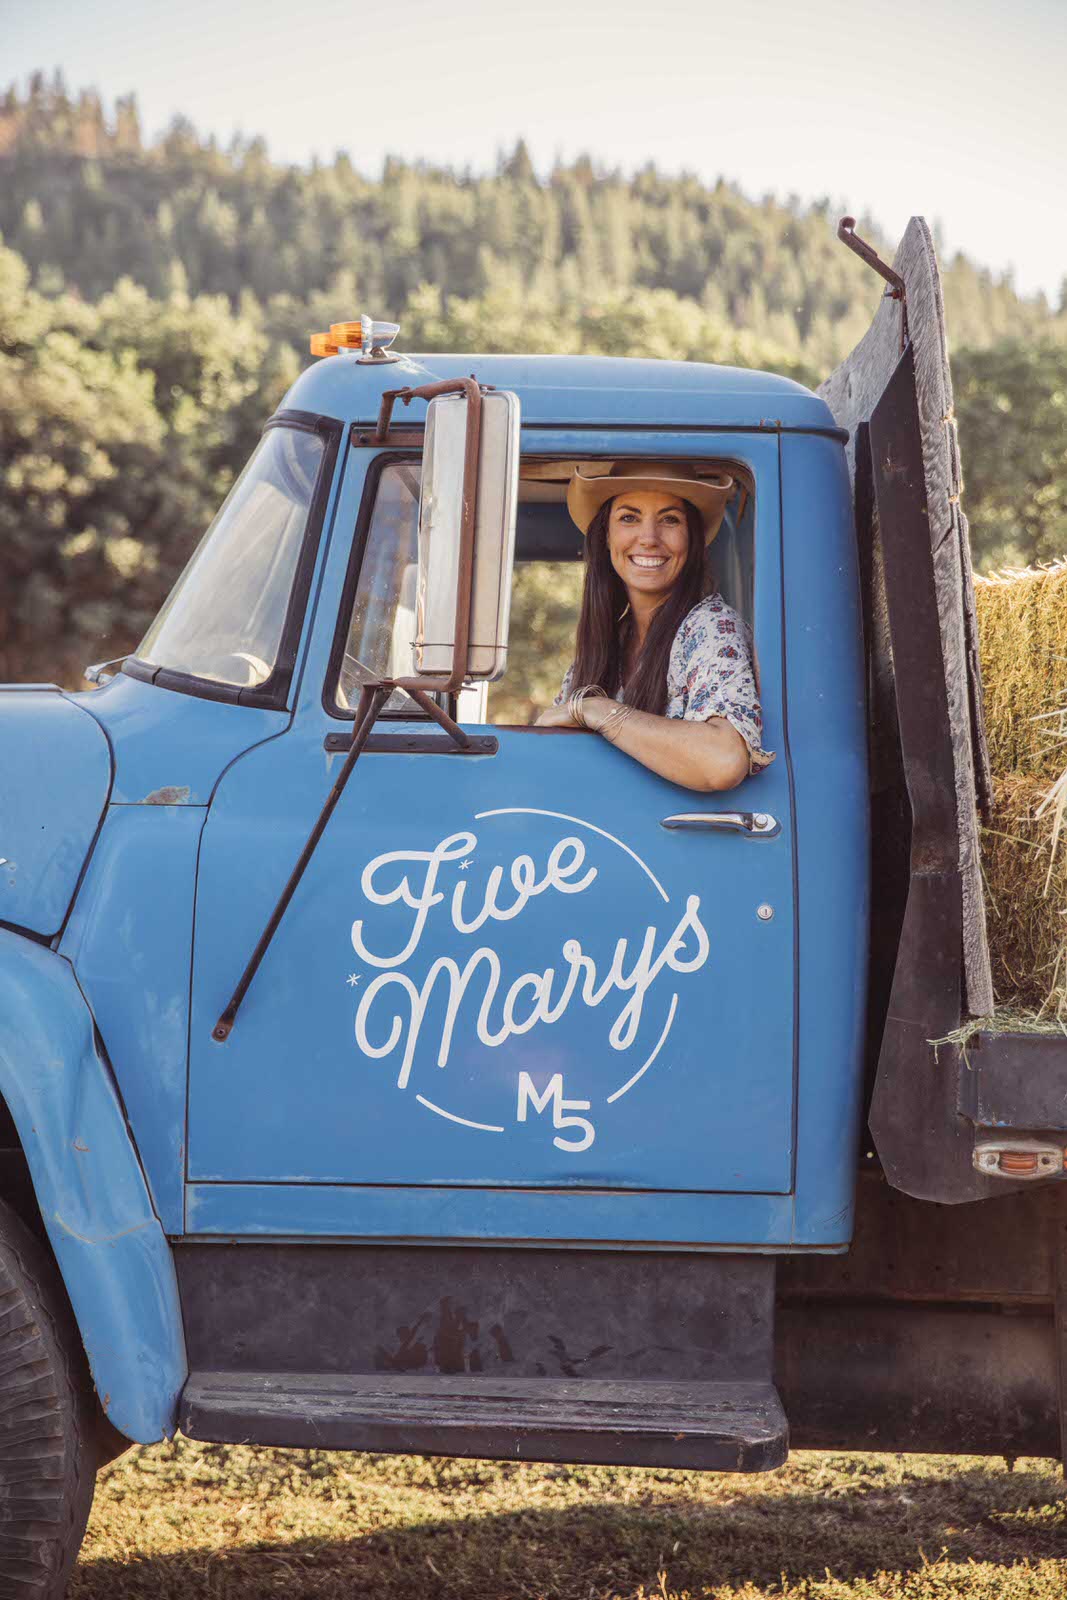 Mary Heffernan of Five Marys Farms in the Blue Feed Truck